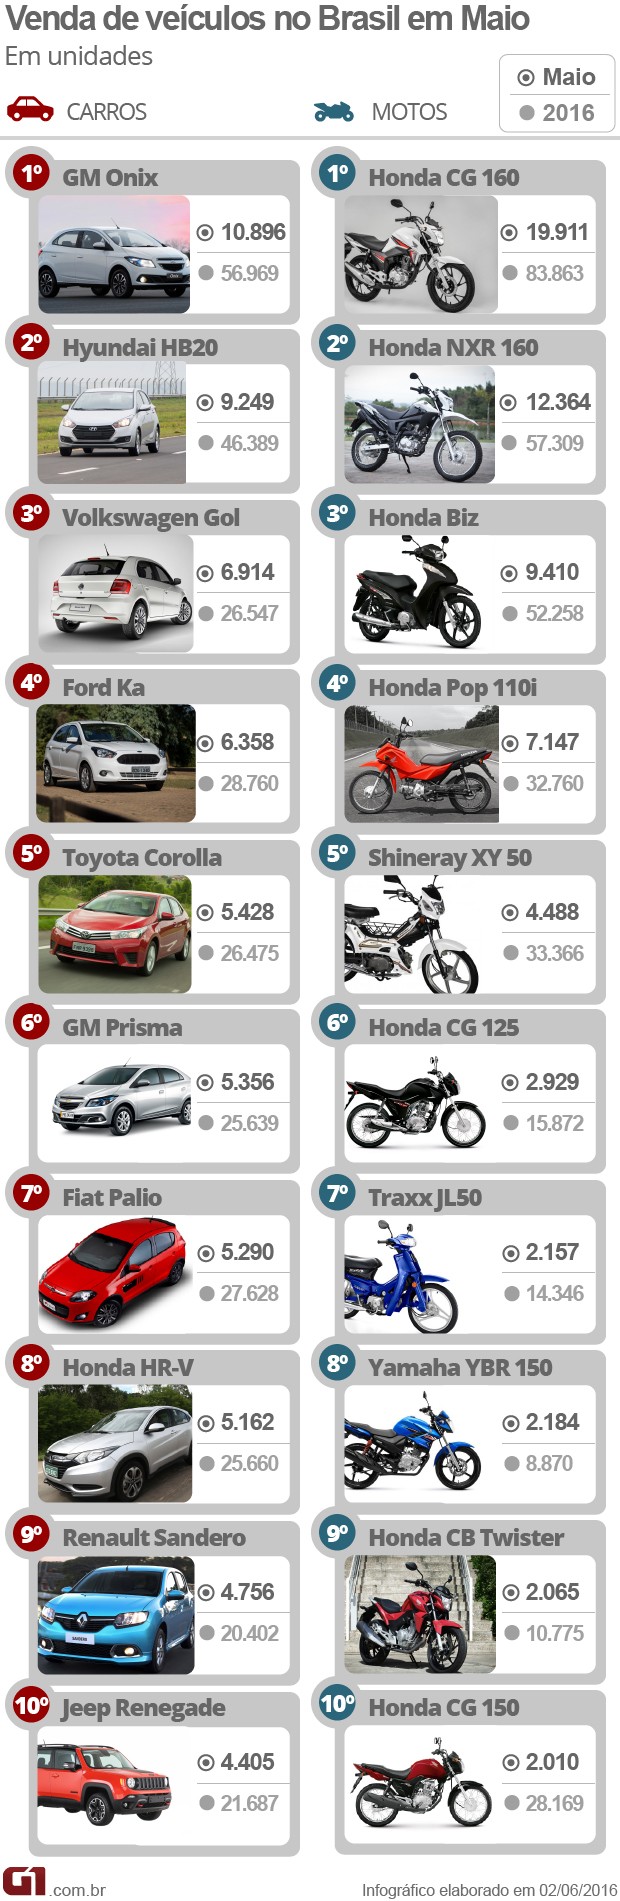 Auto Esporte - Veja 10 carros e 10 motos mais vendidos em 2012